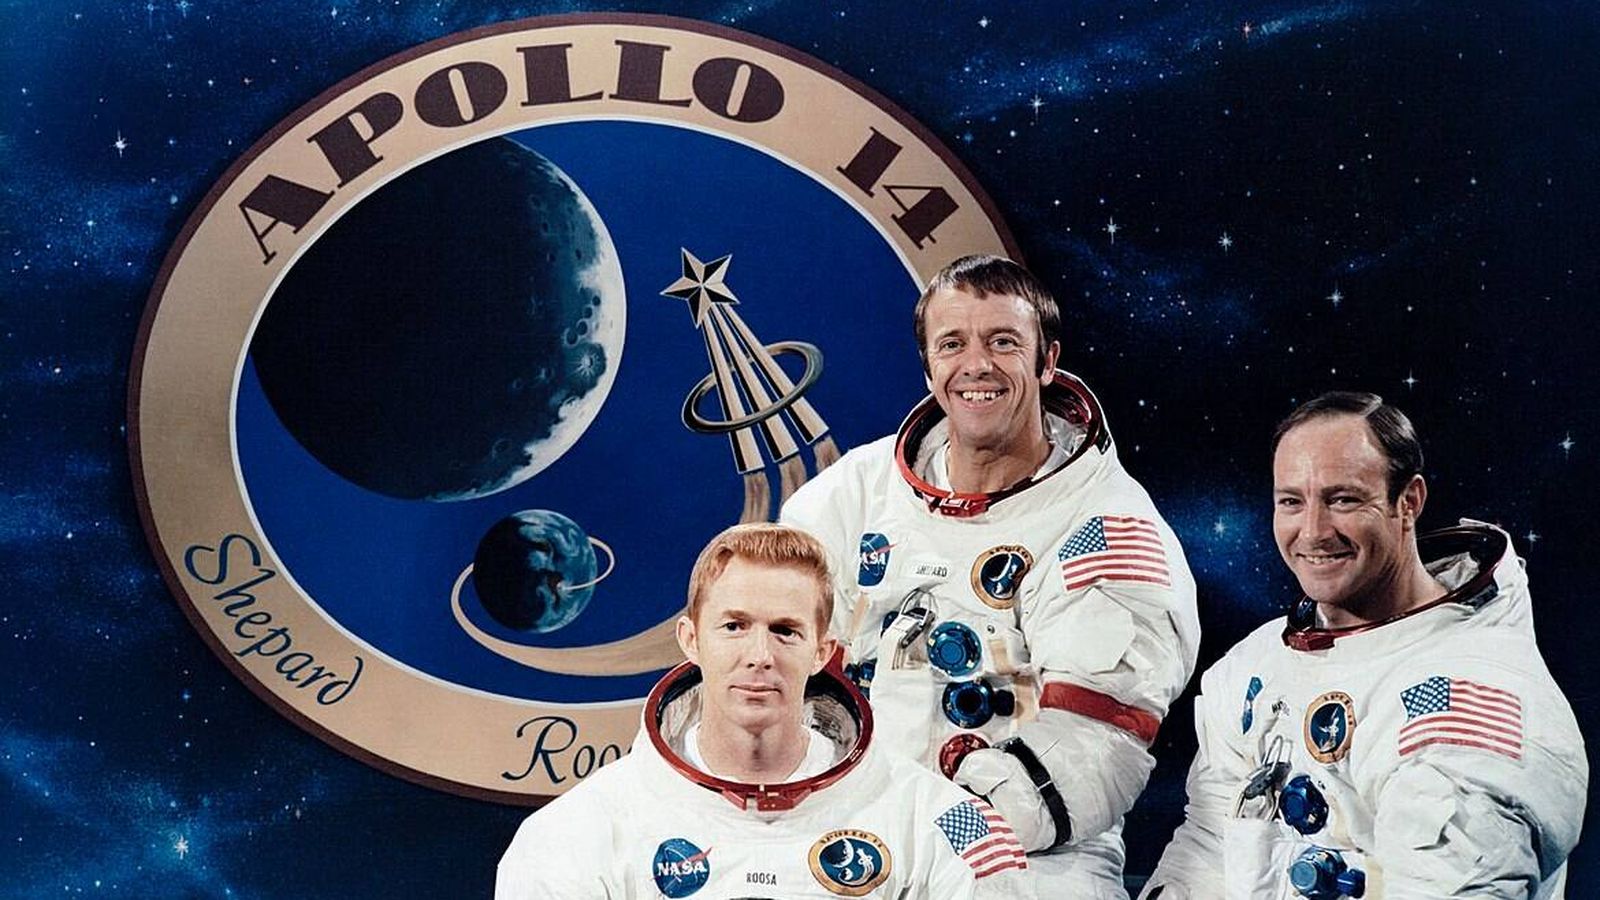 Imagen oficial de la tripulación principal del Apolo 14. (Wikimedia)